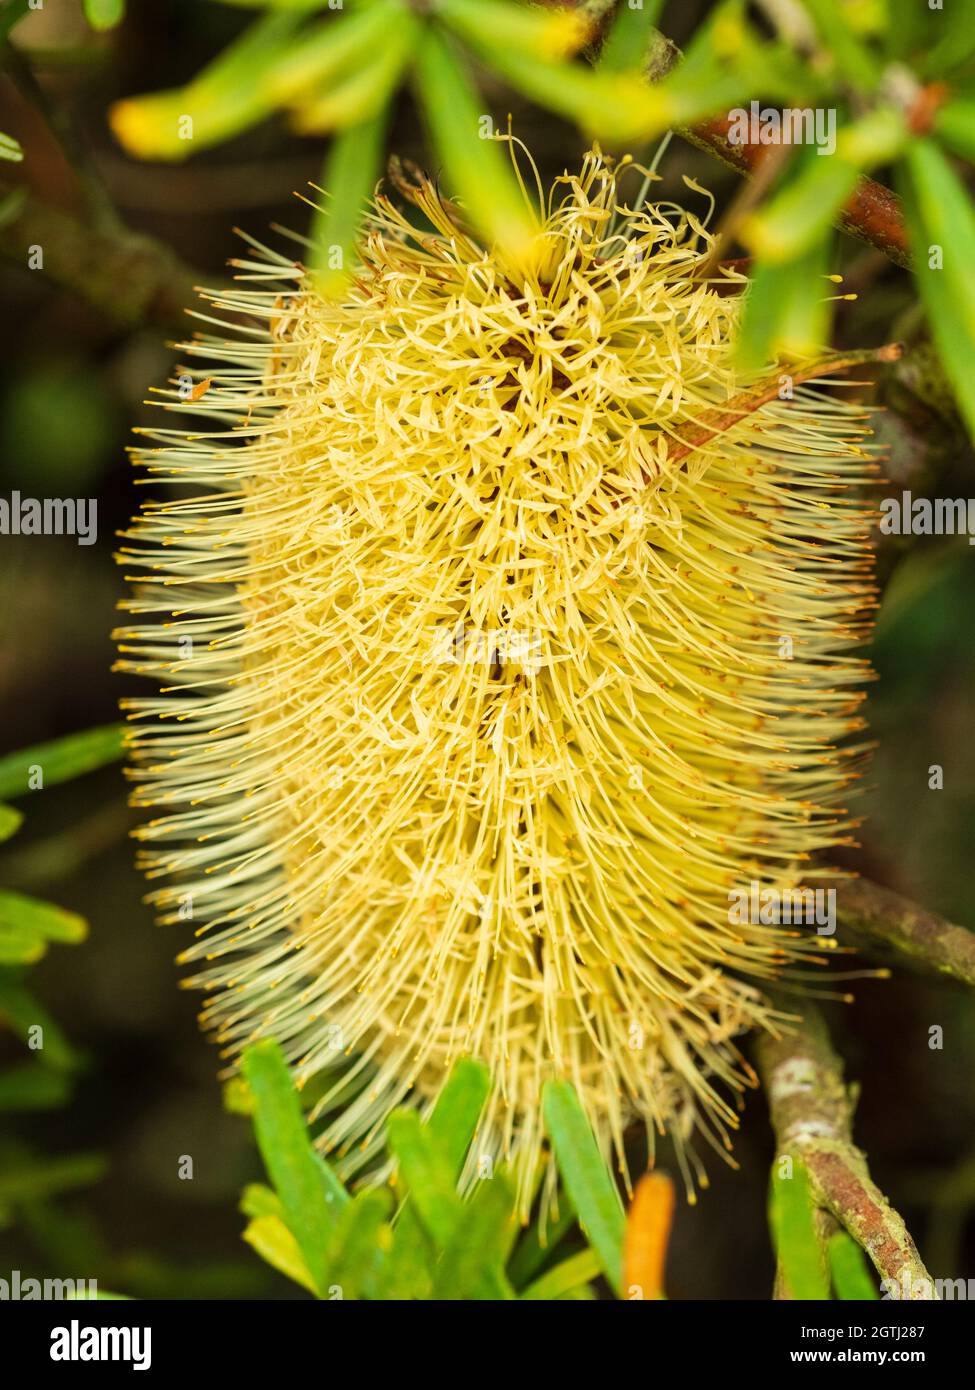 Densely packed bottlebrush type flower head of the Australian native evergreen shrub, Banksia marginata Stock Photo